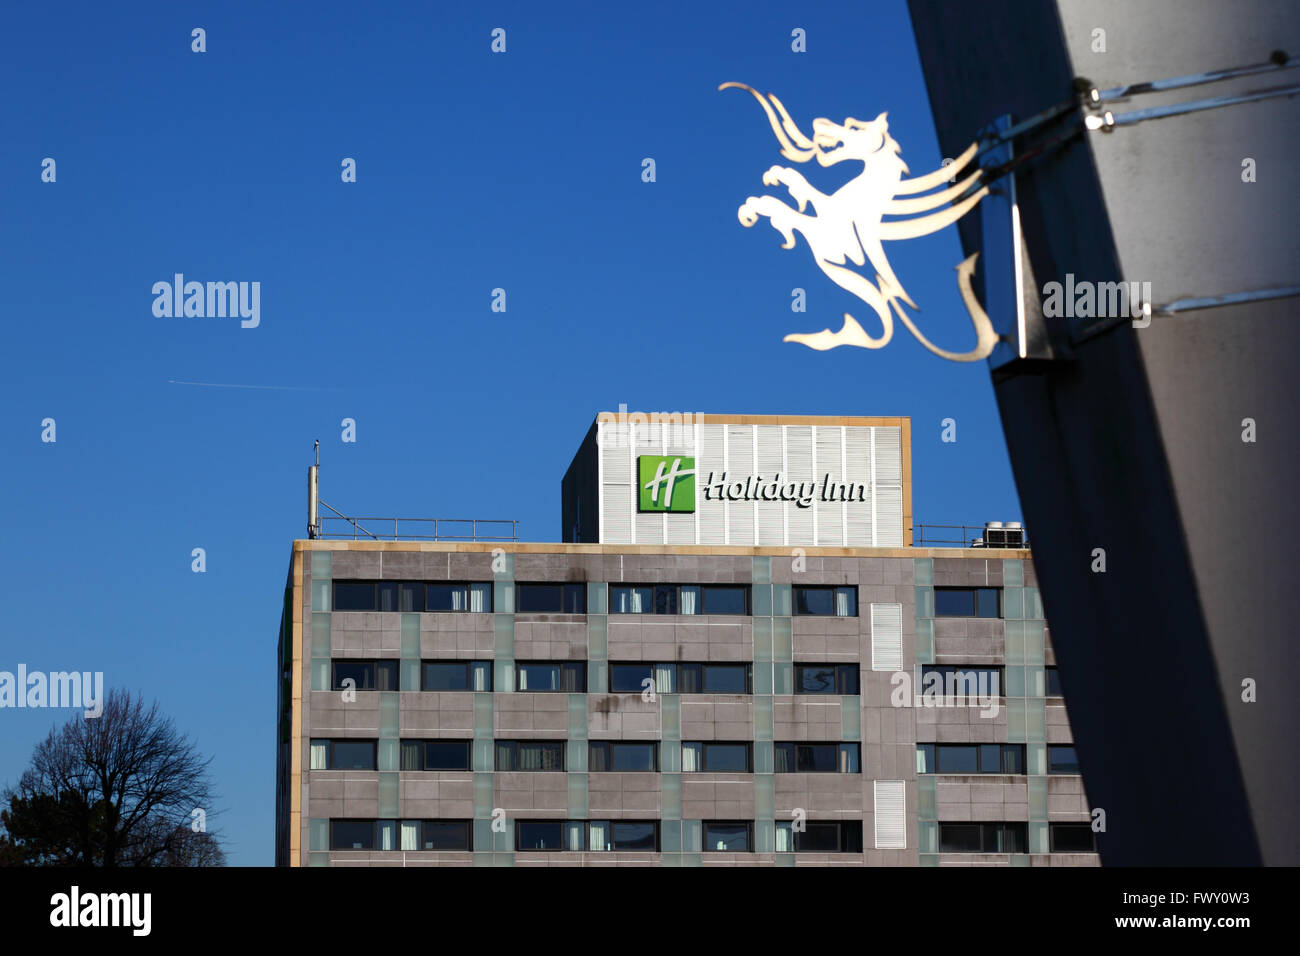 Welsh dragon simbolo, Holiday Inn hotel edificio in background, Cardiff Wales, Regno Unito Foto Stock